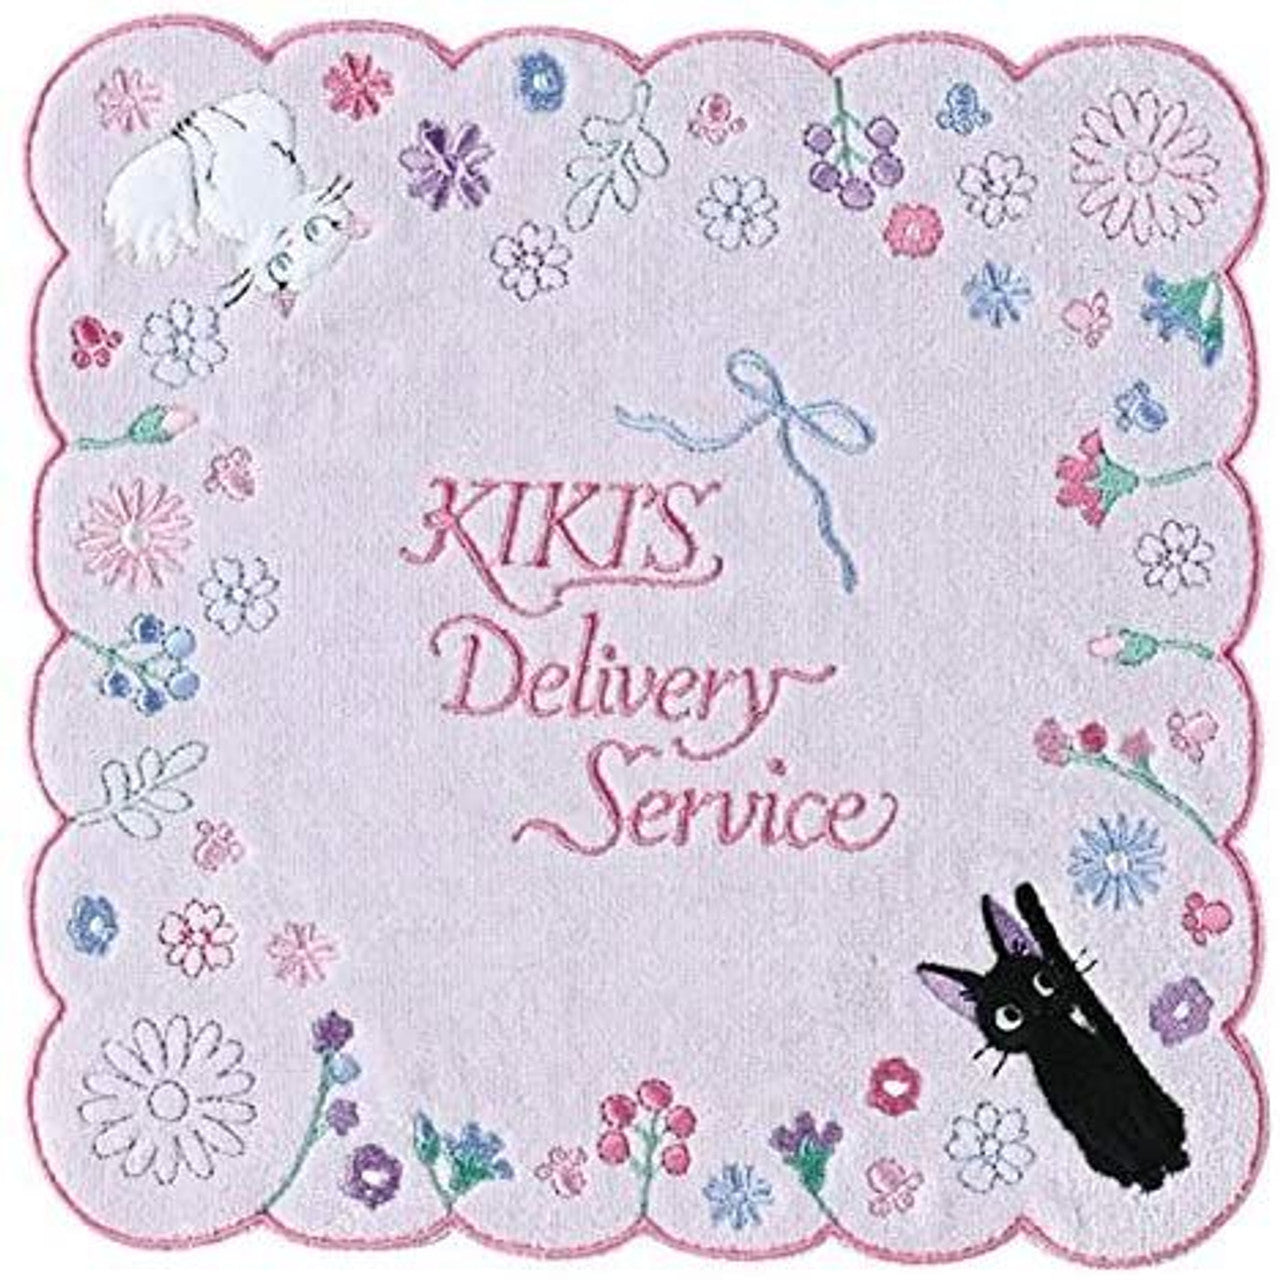 Kiki Delivery Service Mini Serviette 03